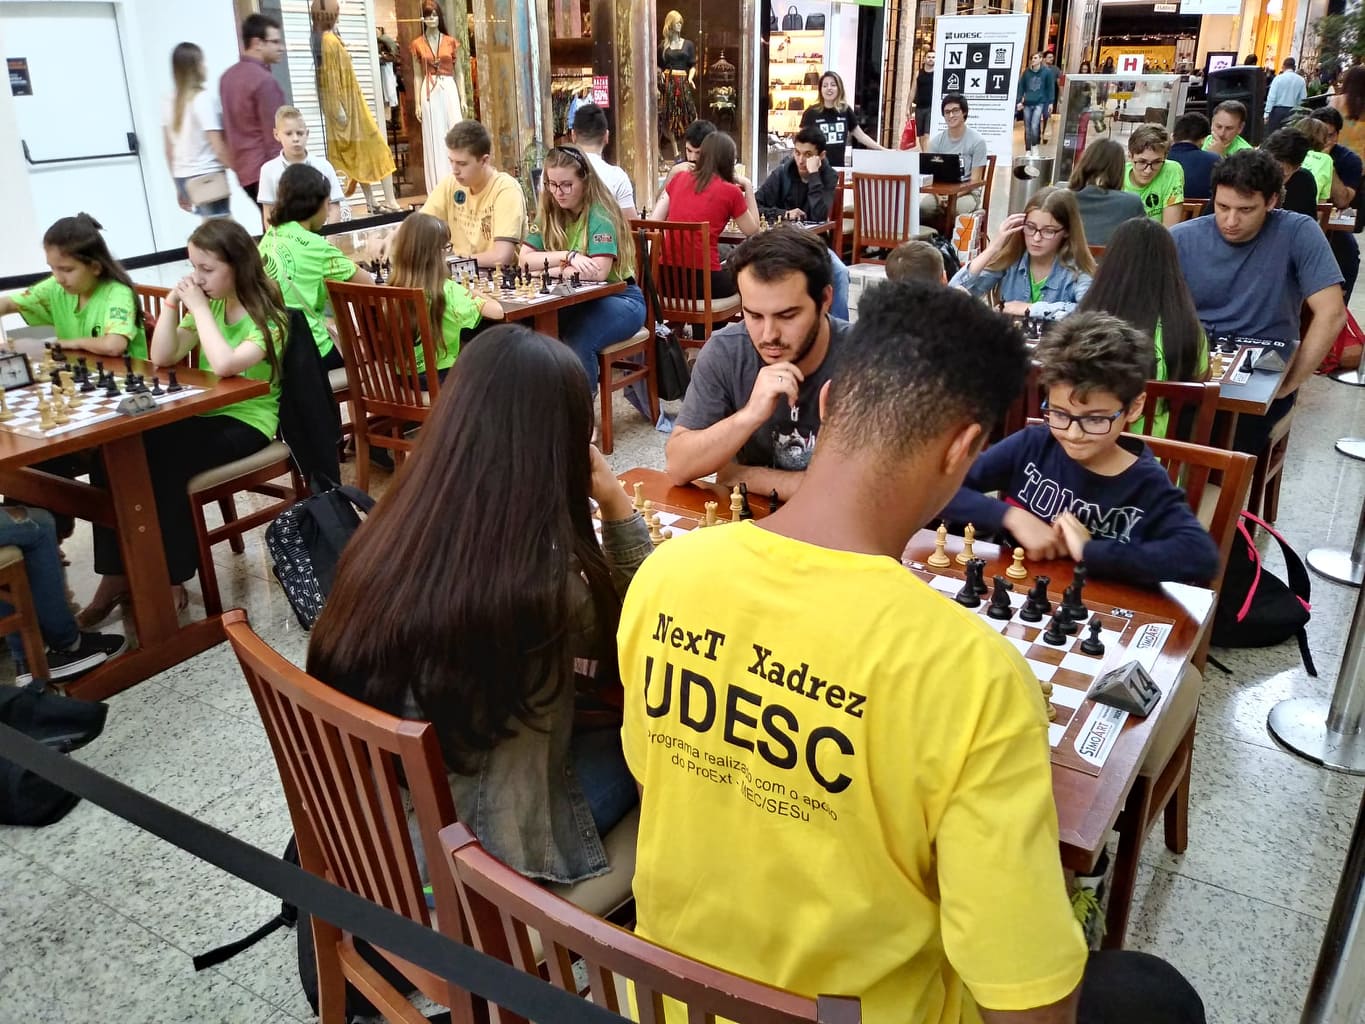 Notícia - Núcleo de Xadrez da Udesc Joinville cria clube virtual